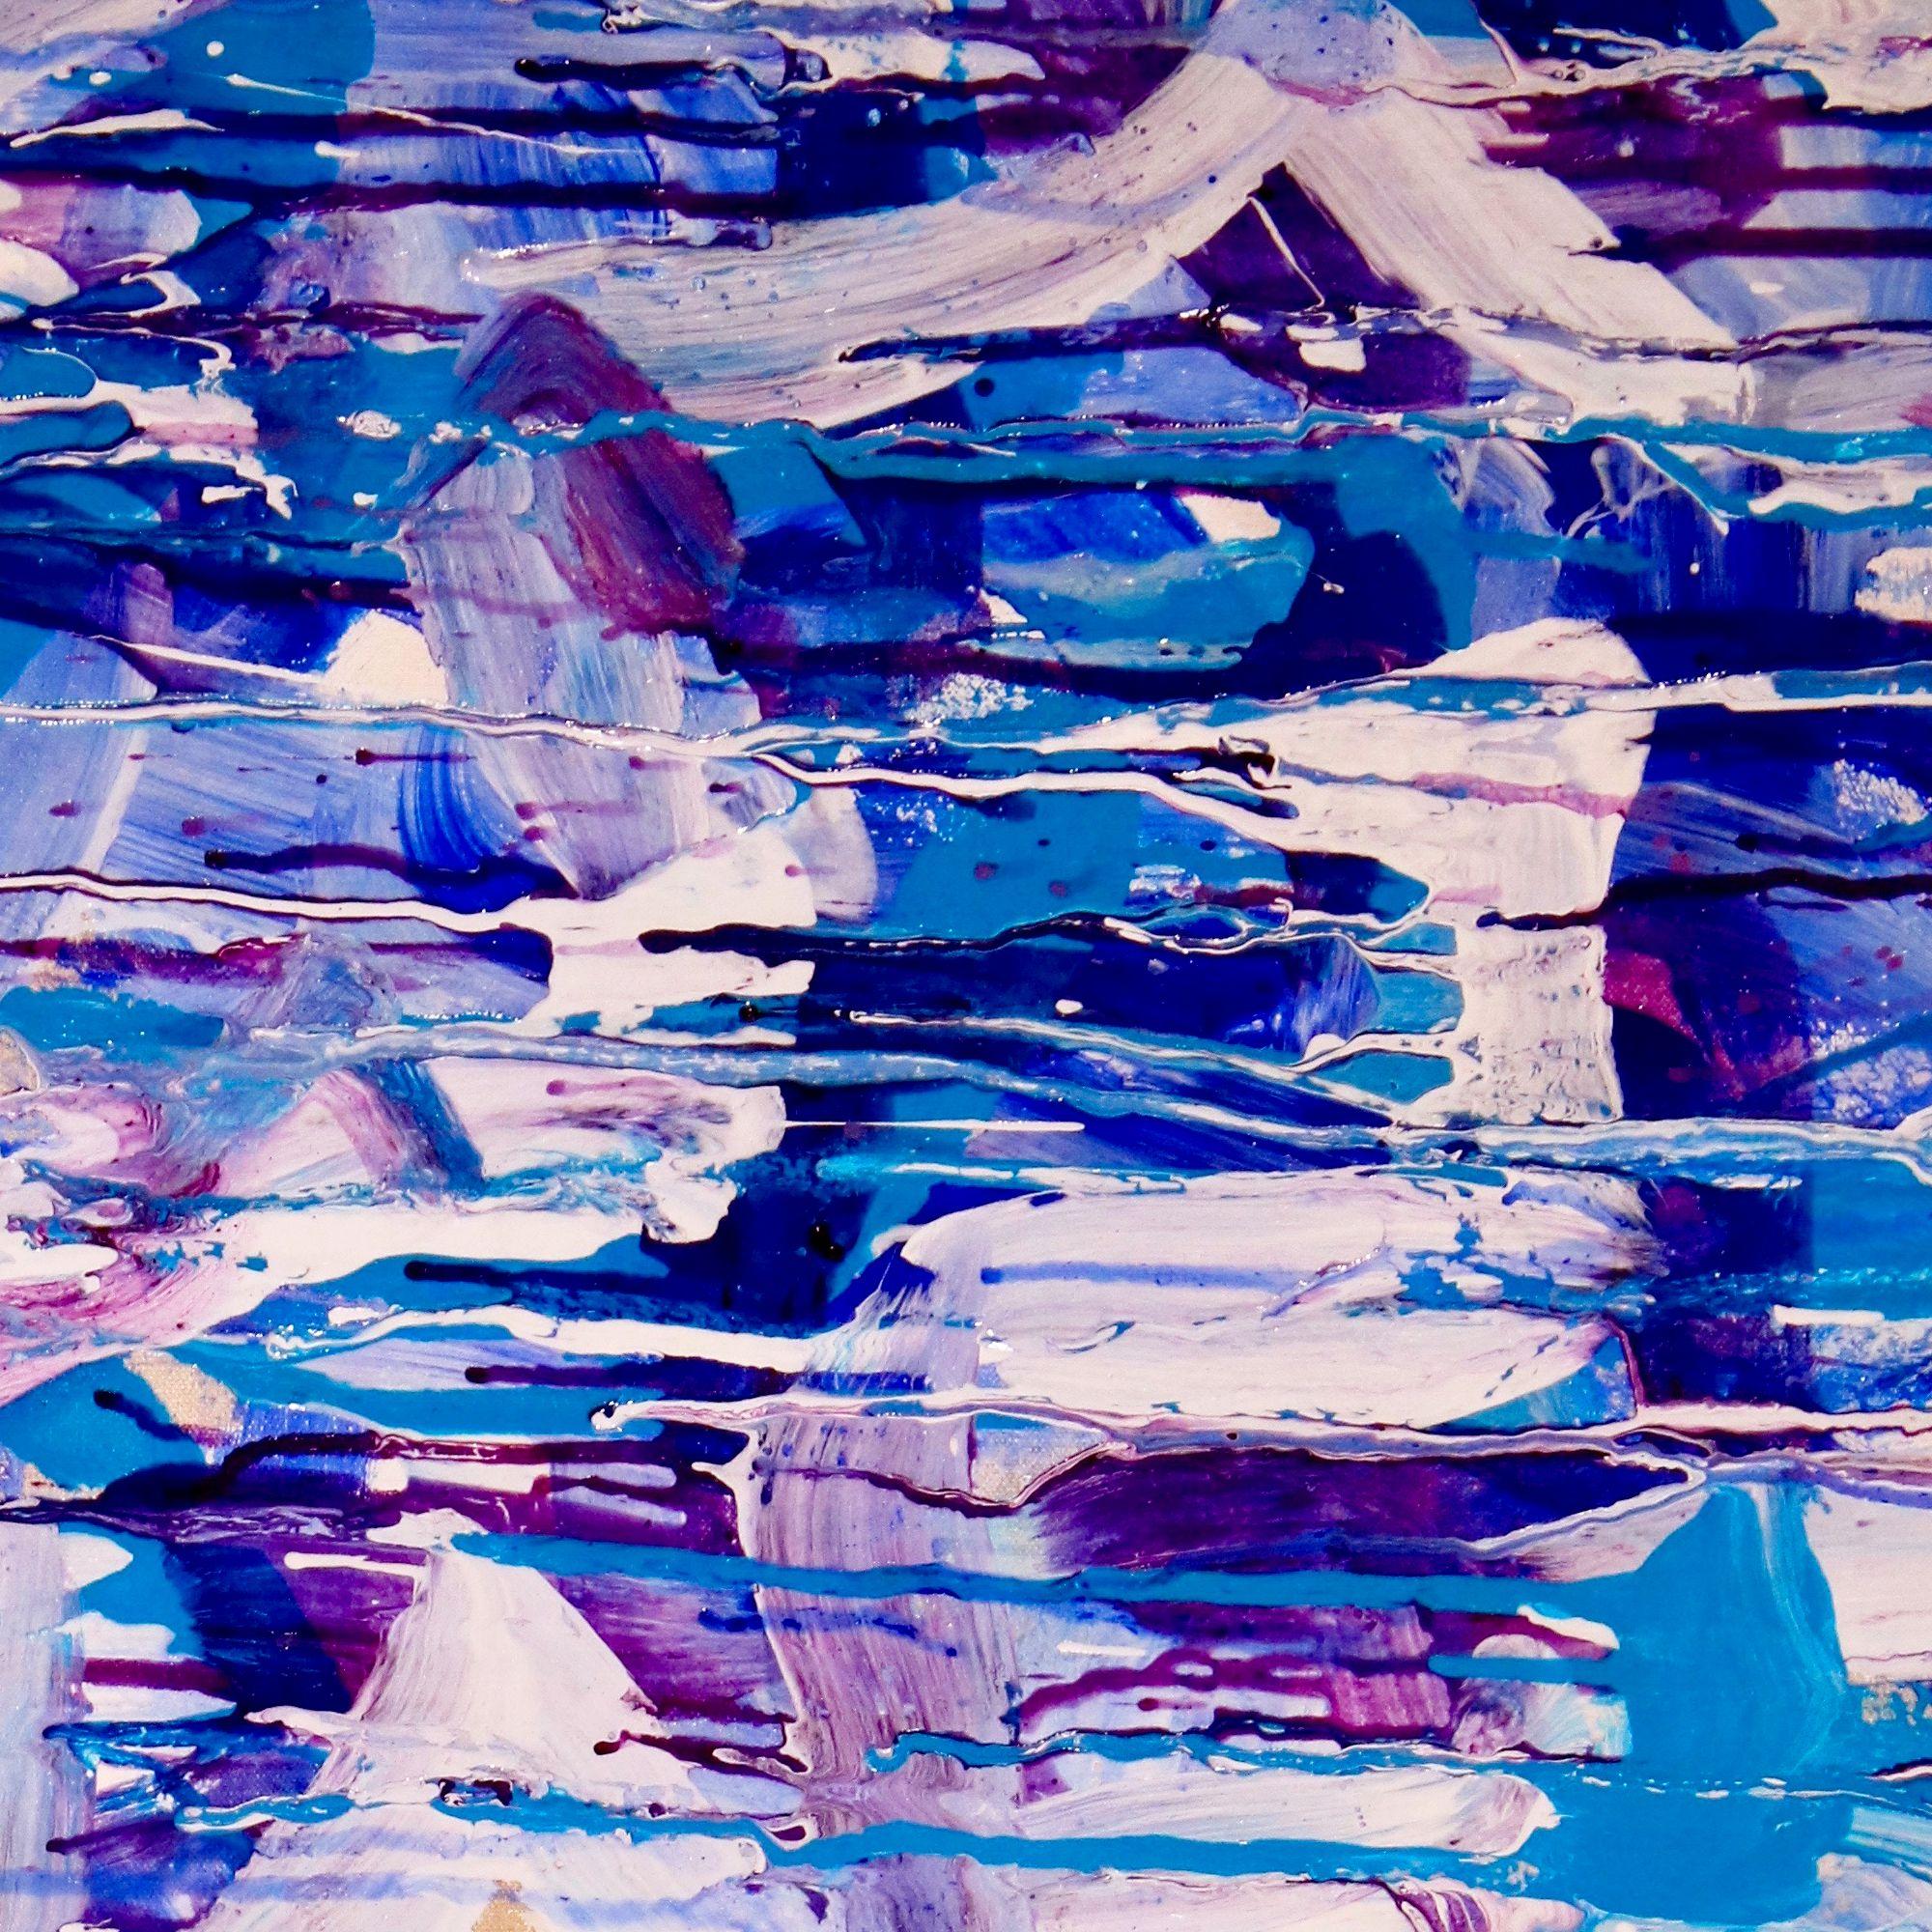 XL EINDRUCKSVOLLES GESTISCHES KUNSTWERK!     Großes gestisches Gemälde mit vielen Pinselstrichen und Tropfen in Blautönen, lebhaftem Violett, Blassblau, Weiß und glänzendem, klarem Acryl mit schillernden Glimmerpartikeln. Ein eindrucksvolles